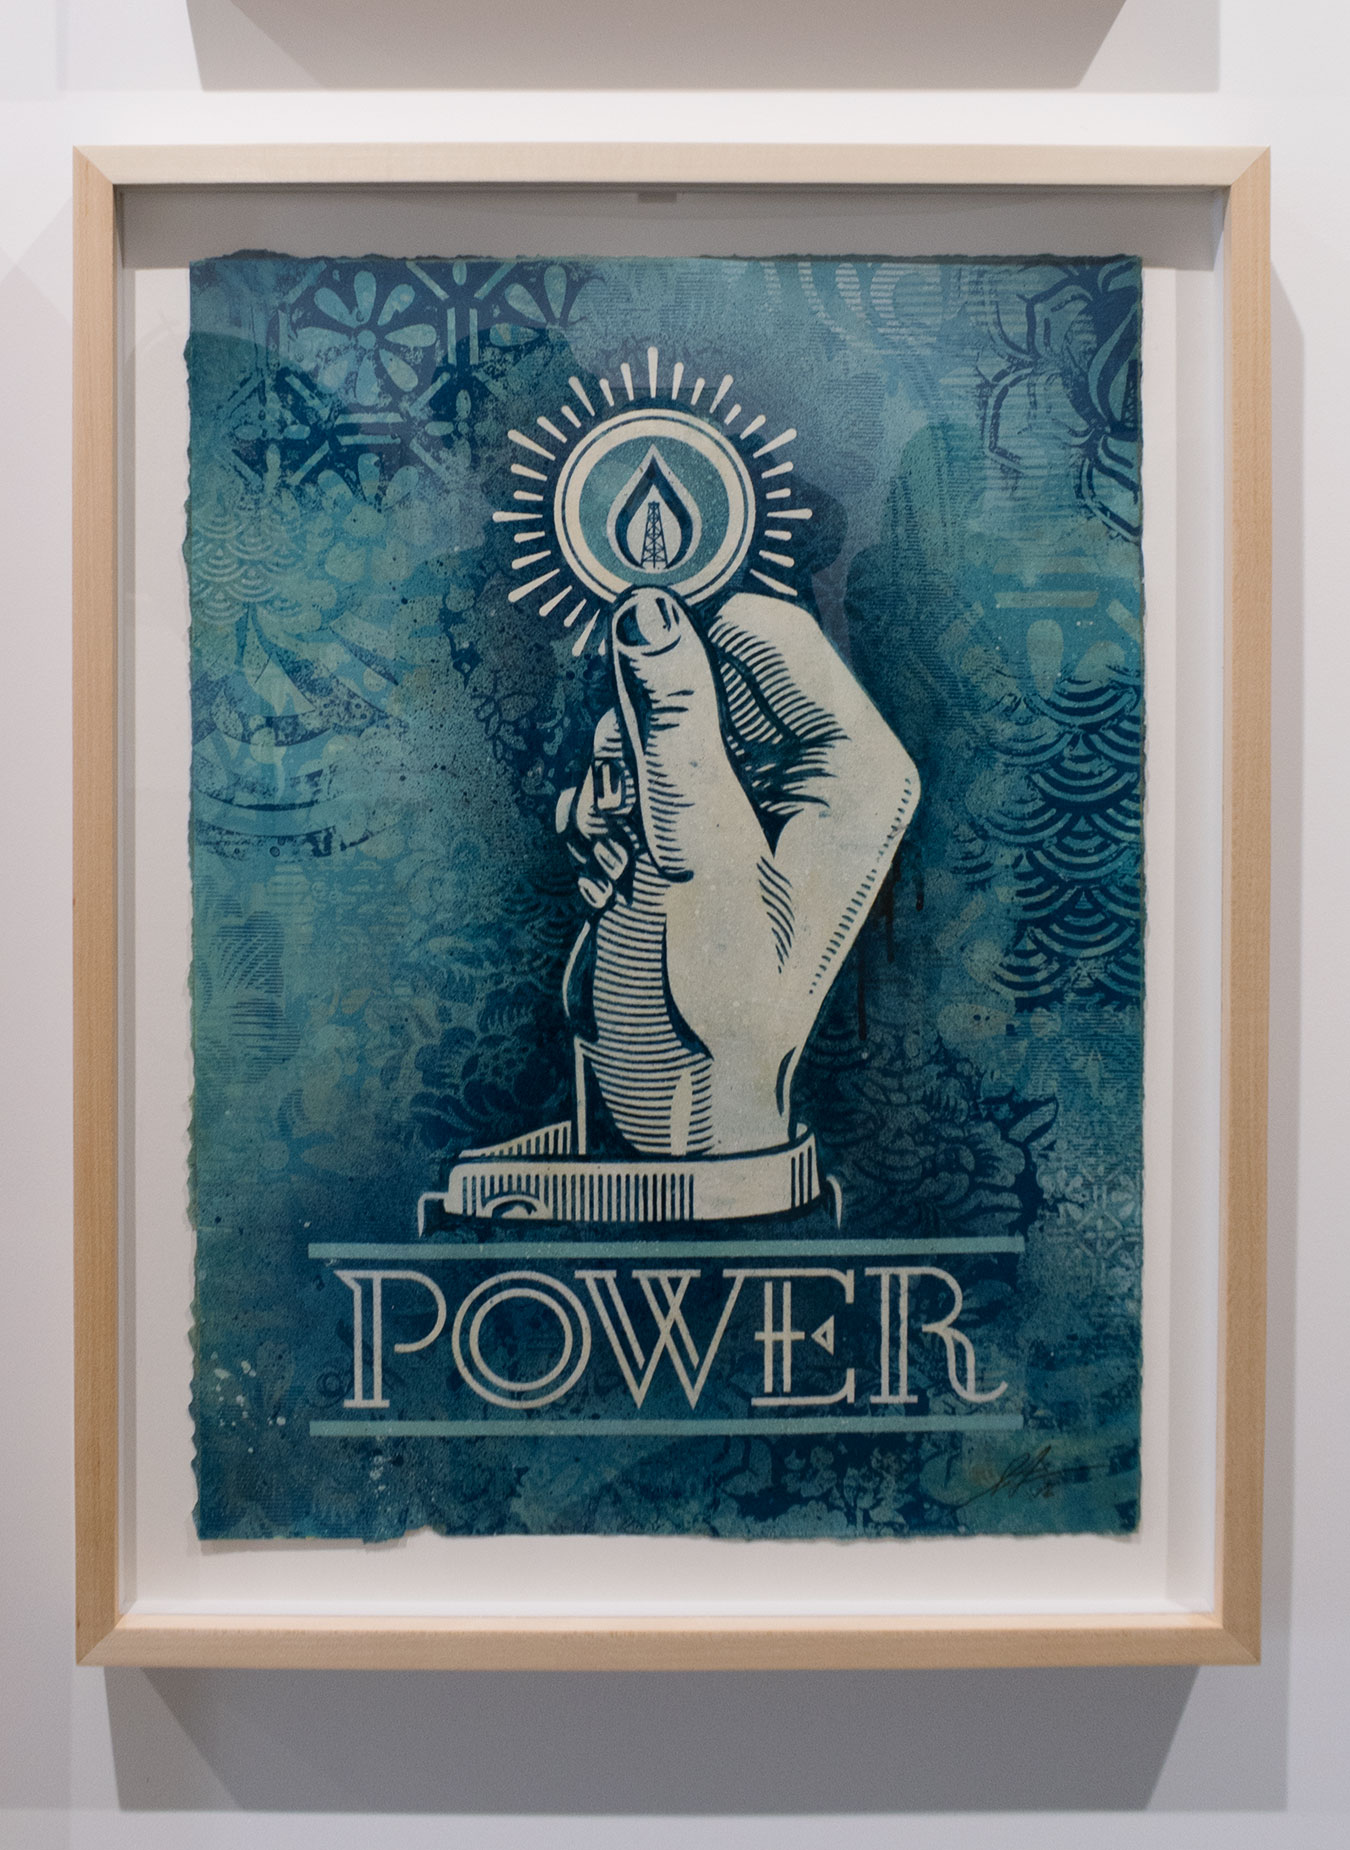 Power Bidder / Earth Crisis Exhibition / Shepard Fairey 2016